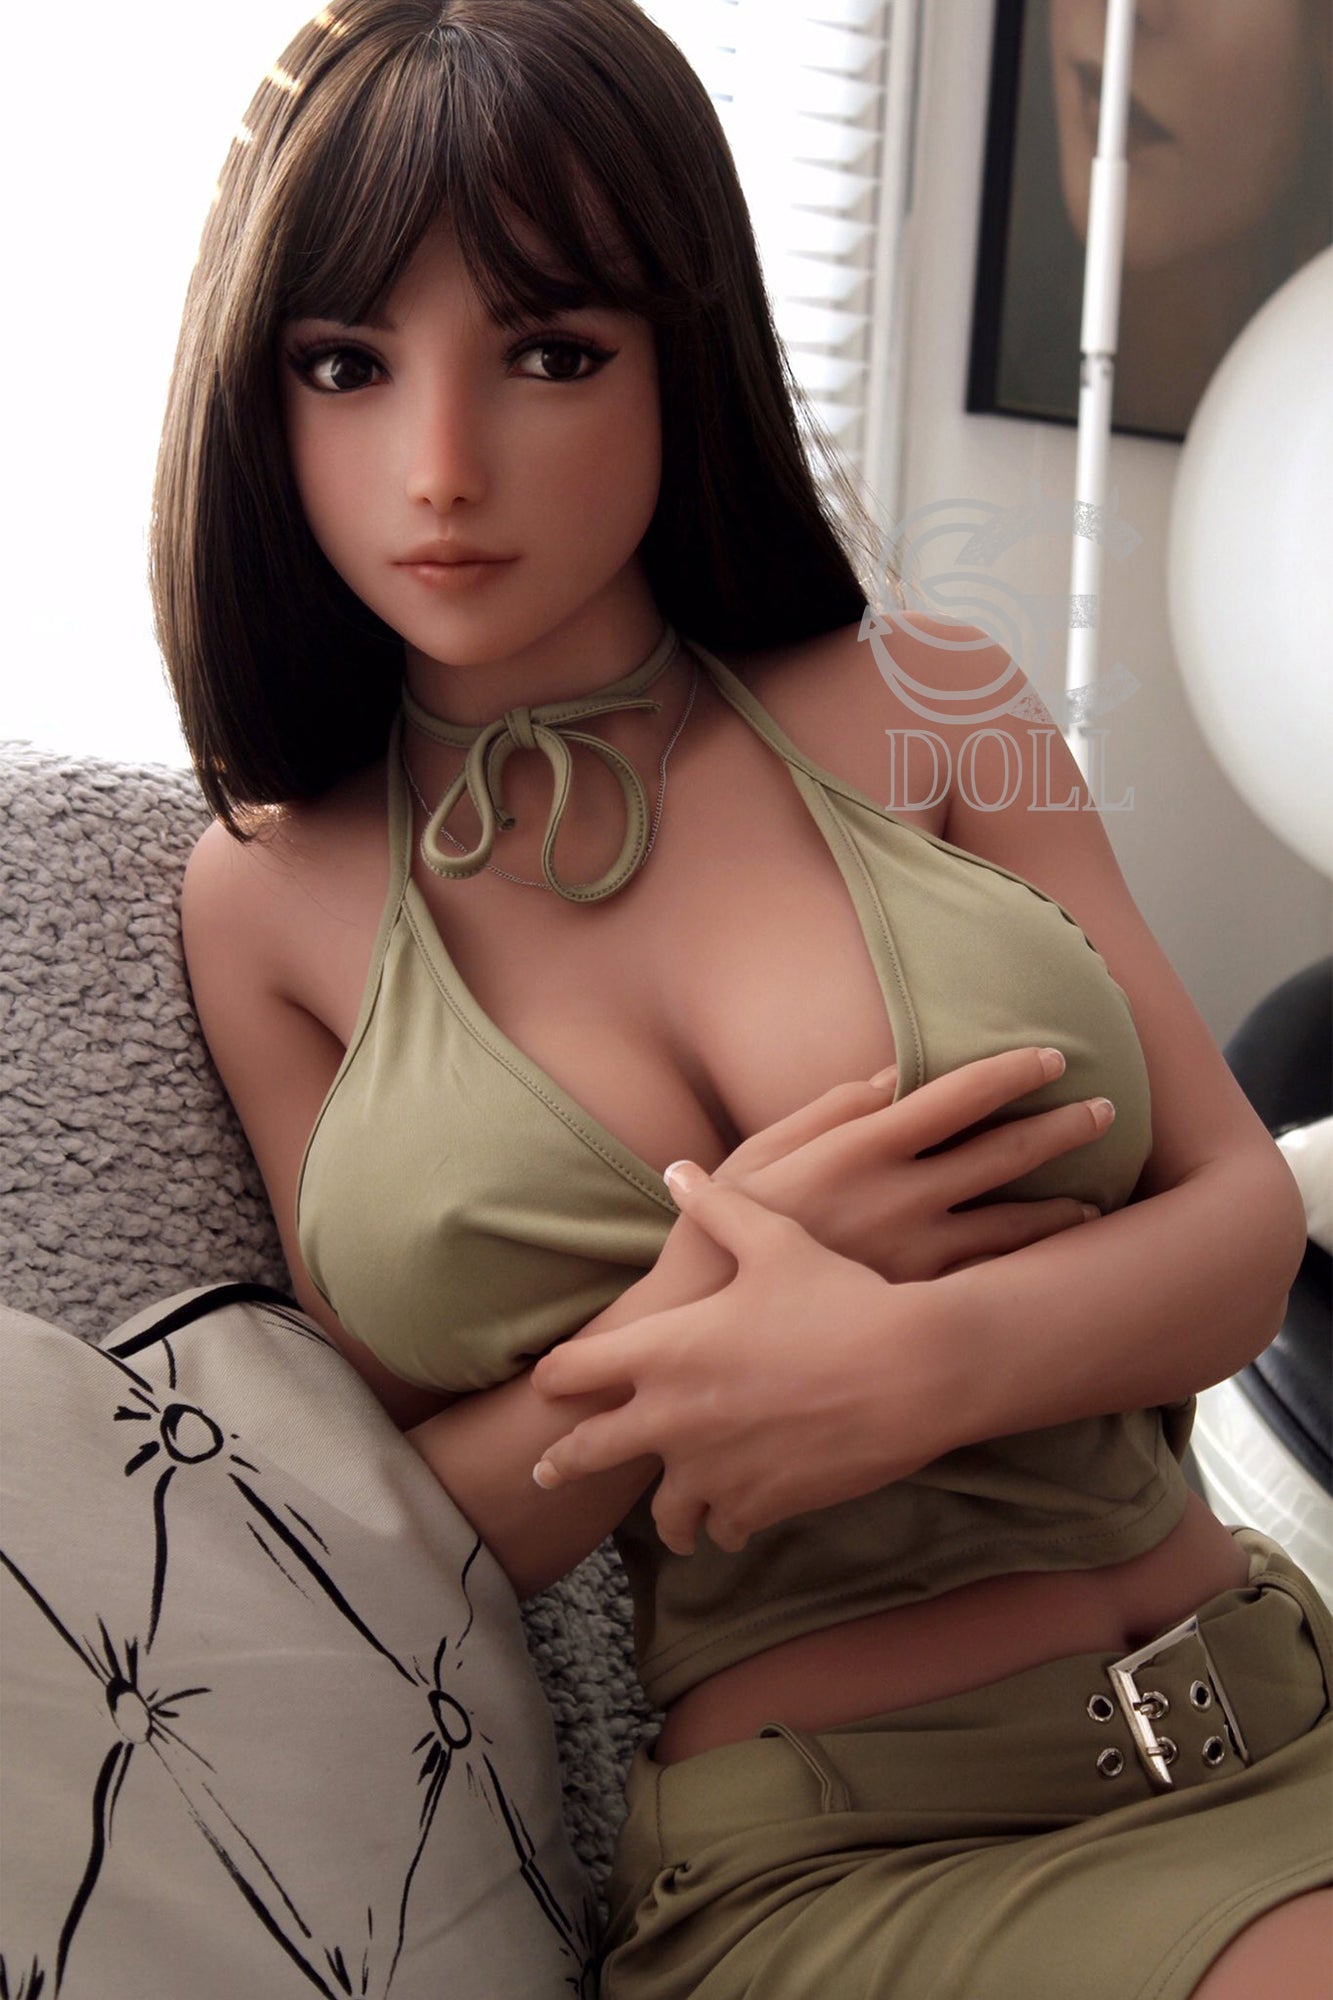 SEDOLL 161 cm F TPE - Elanie | Buy Sex Dolls at DOLLS ACTUALLY